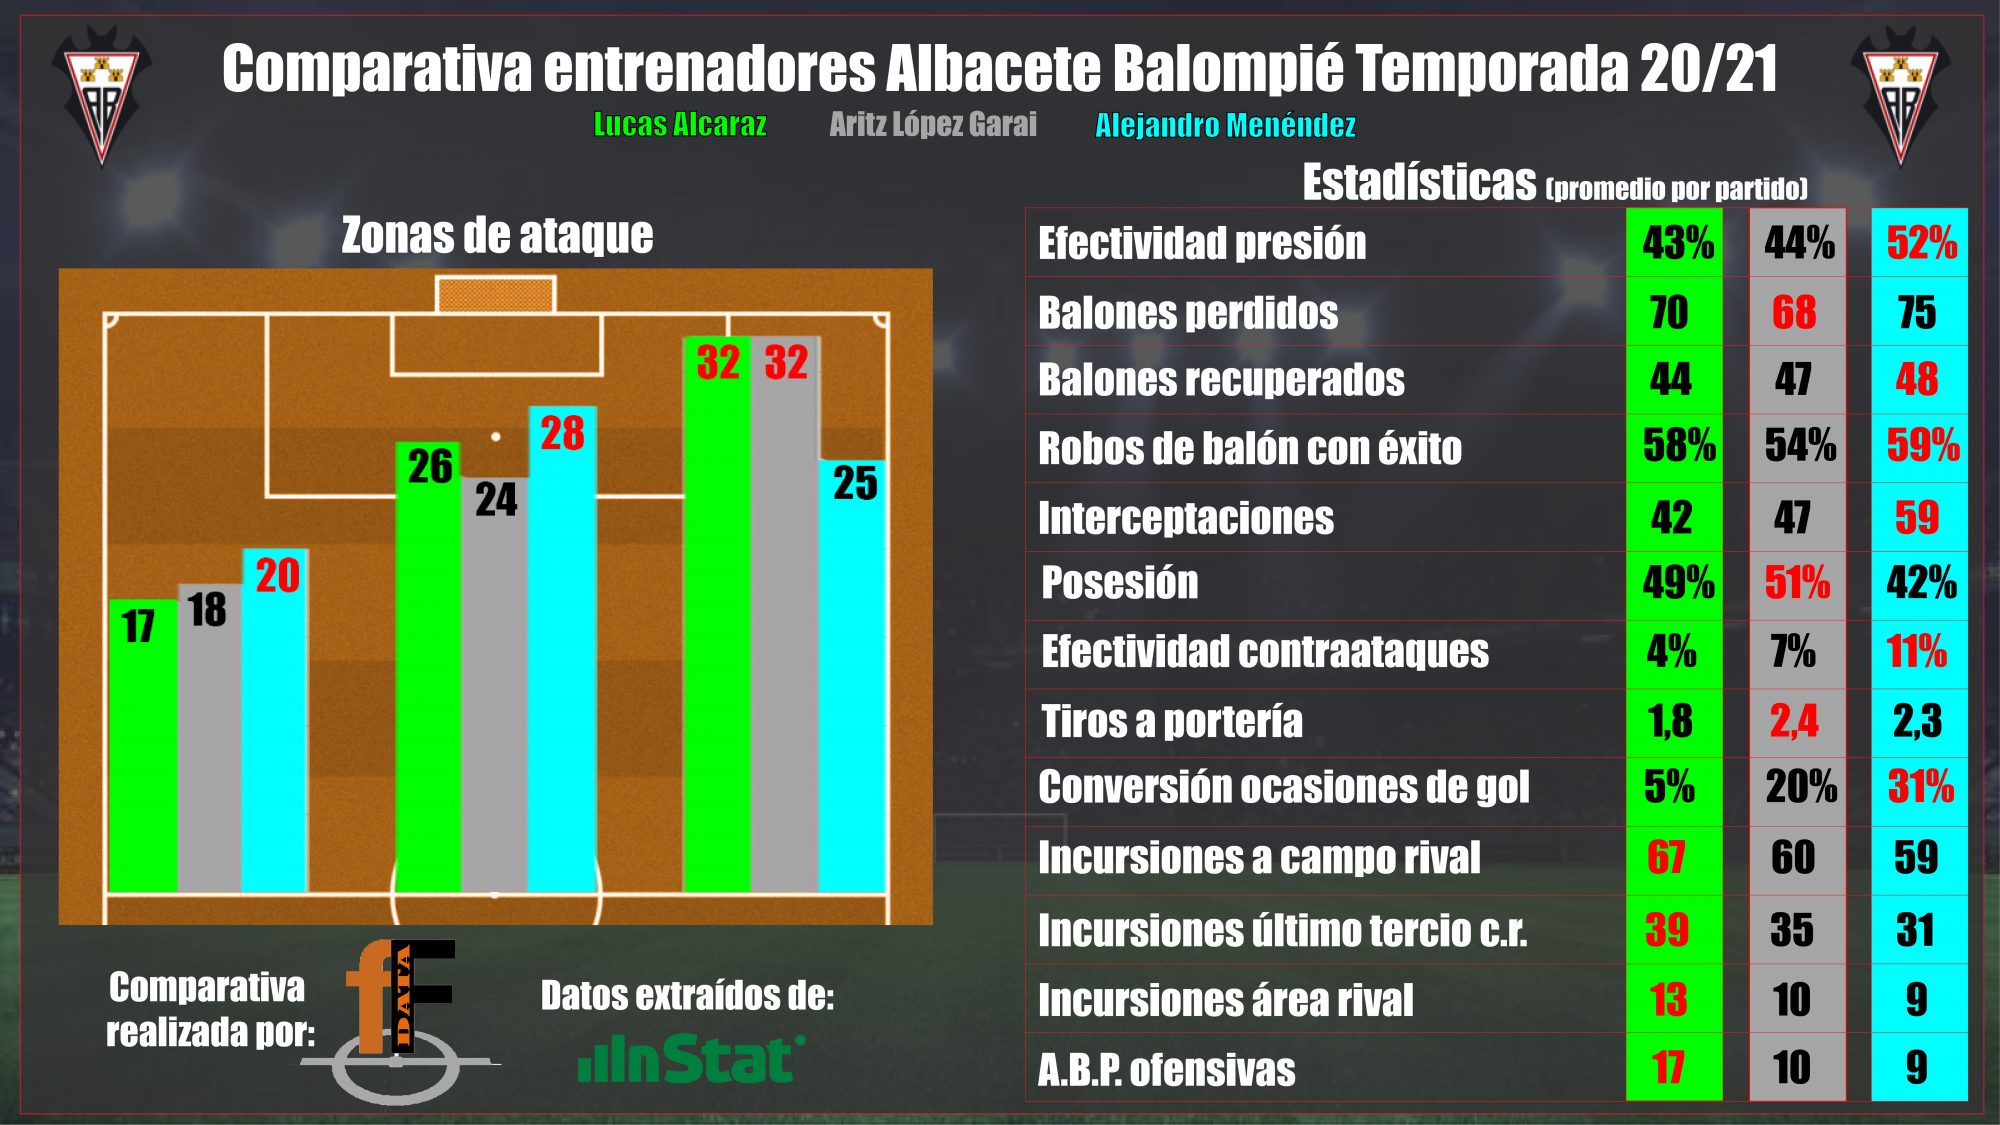 Comparativa entrenadores Albacete Balompie